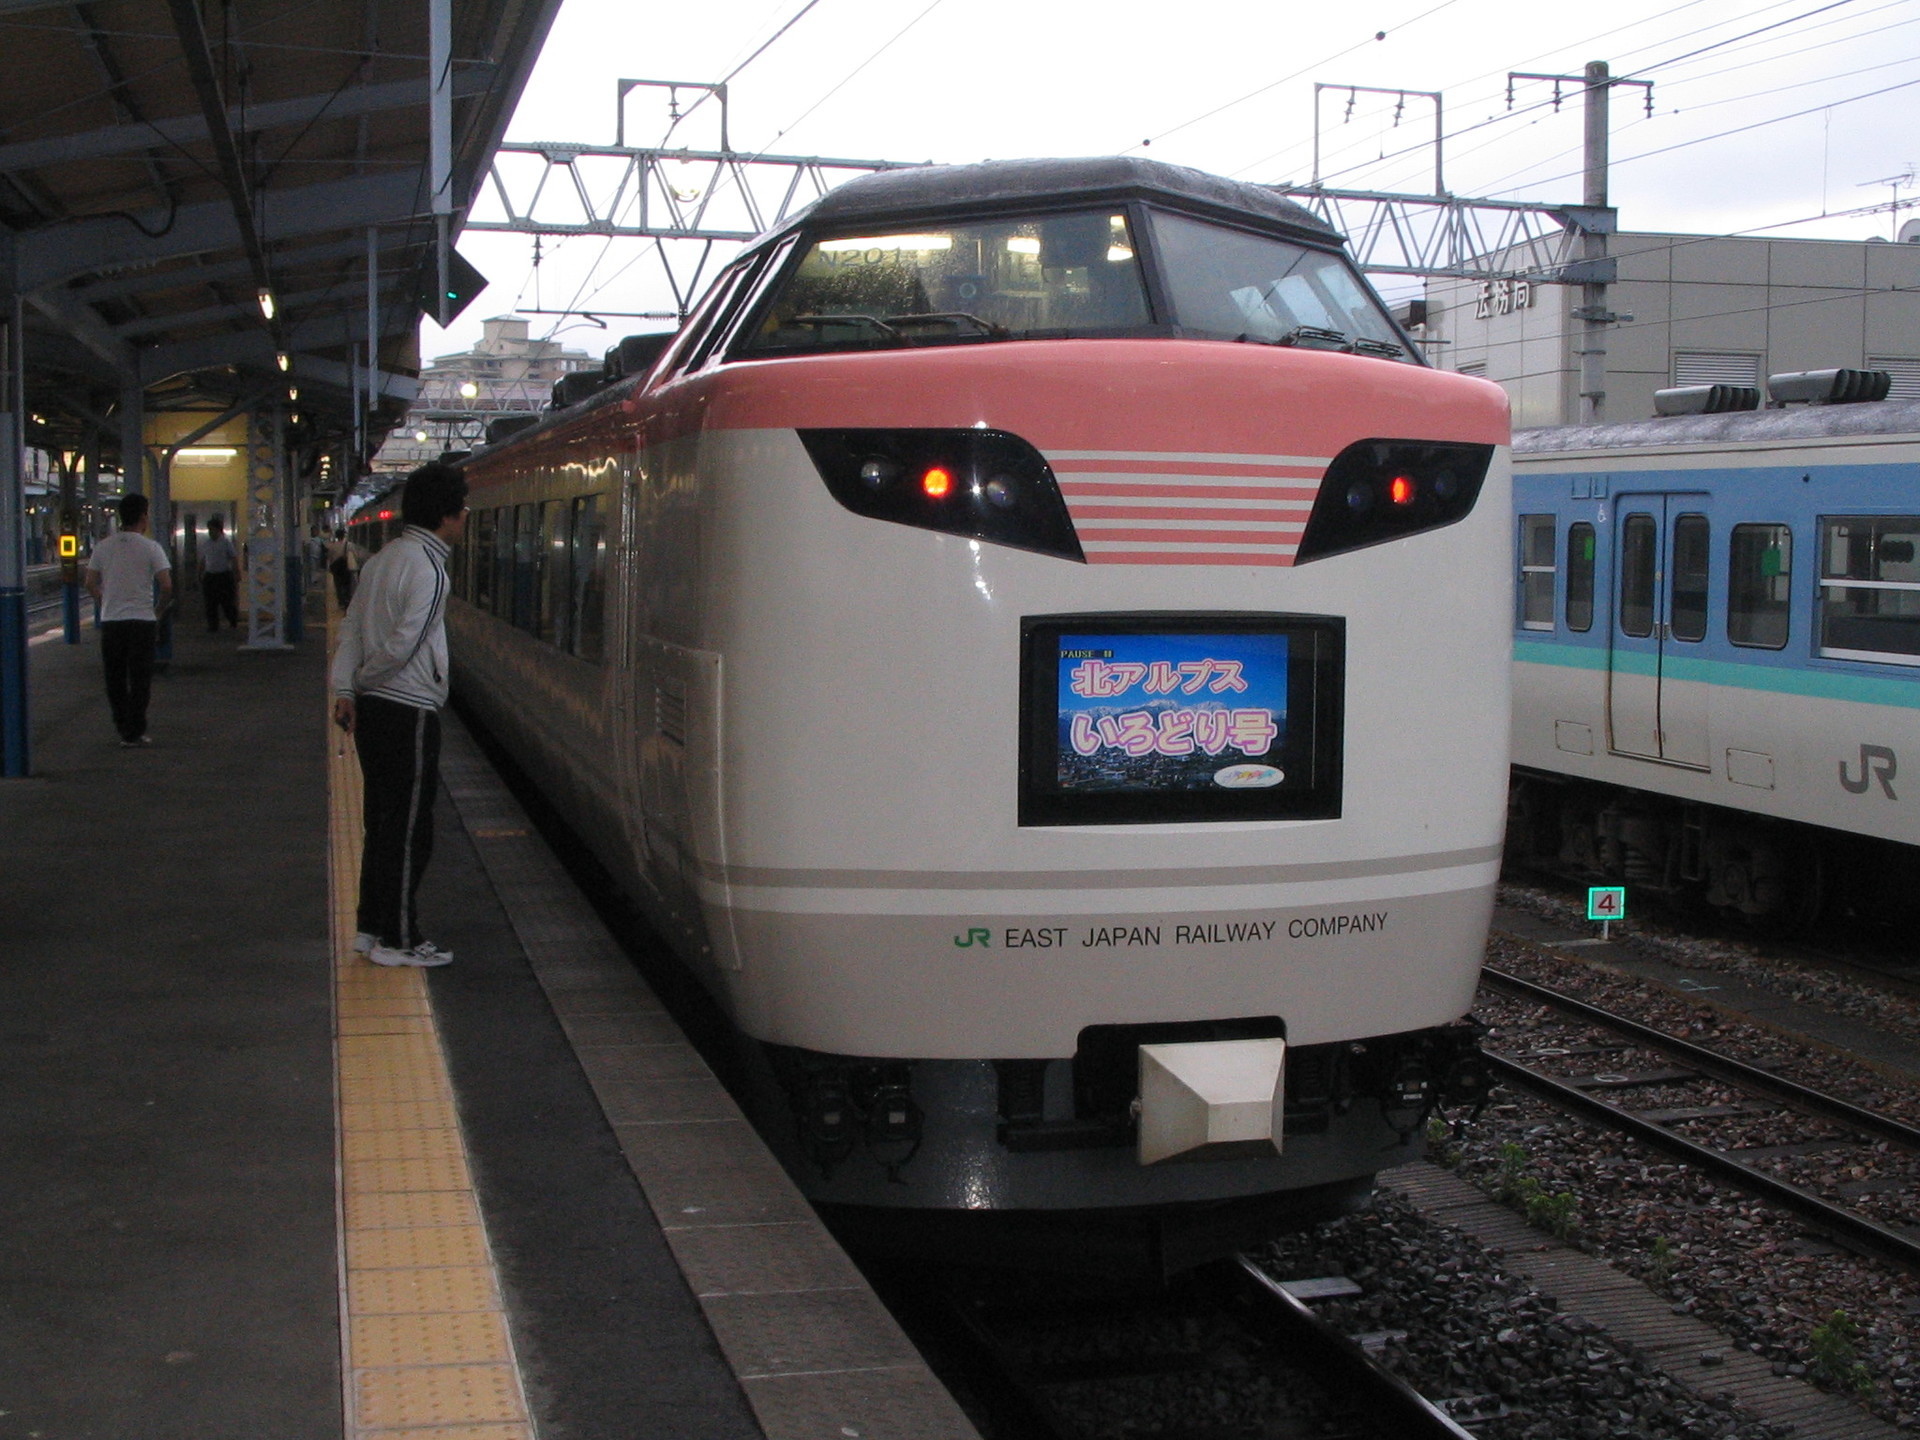 フリーザ電車 こと485系 いろどり 彩 引退 日本の鉄道全路線 乗りつぶしへの道